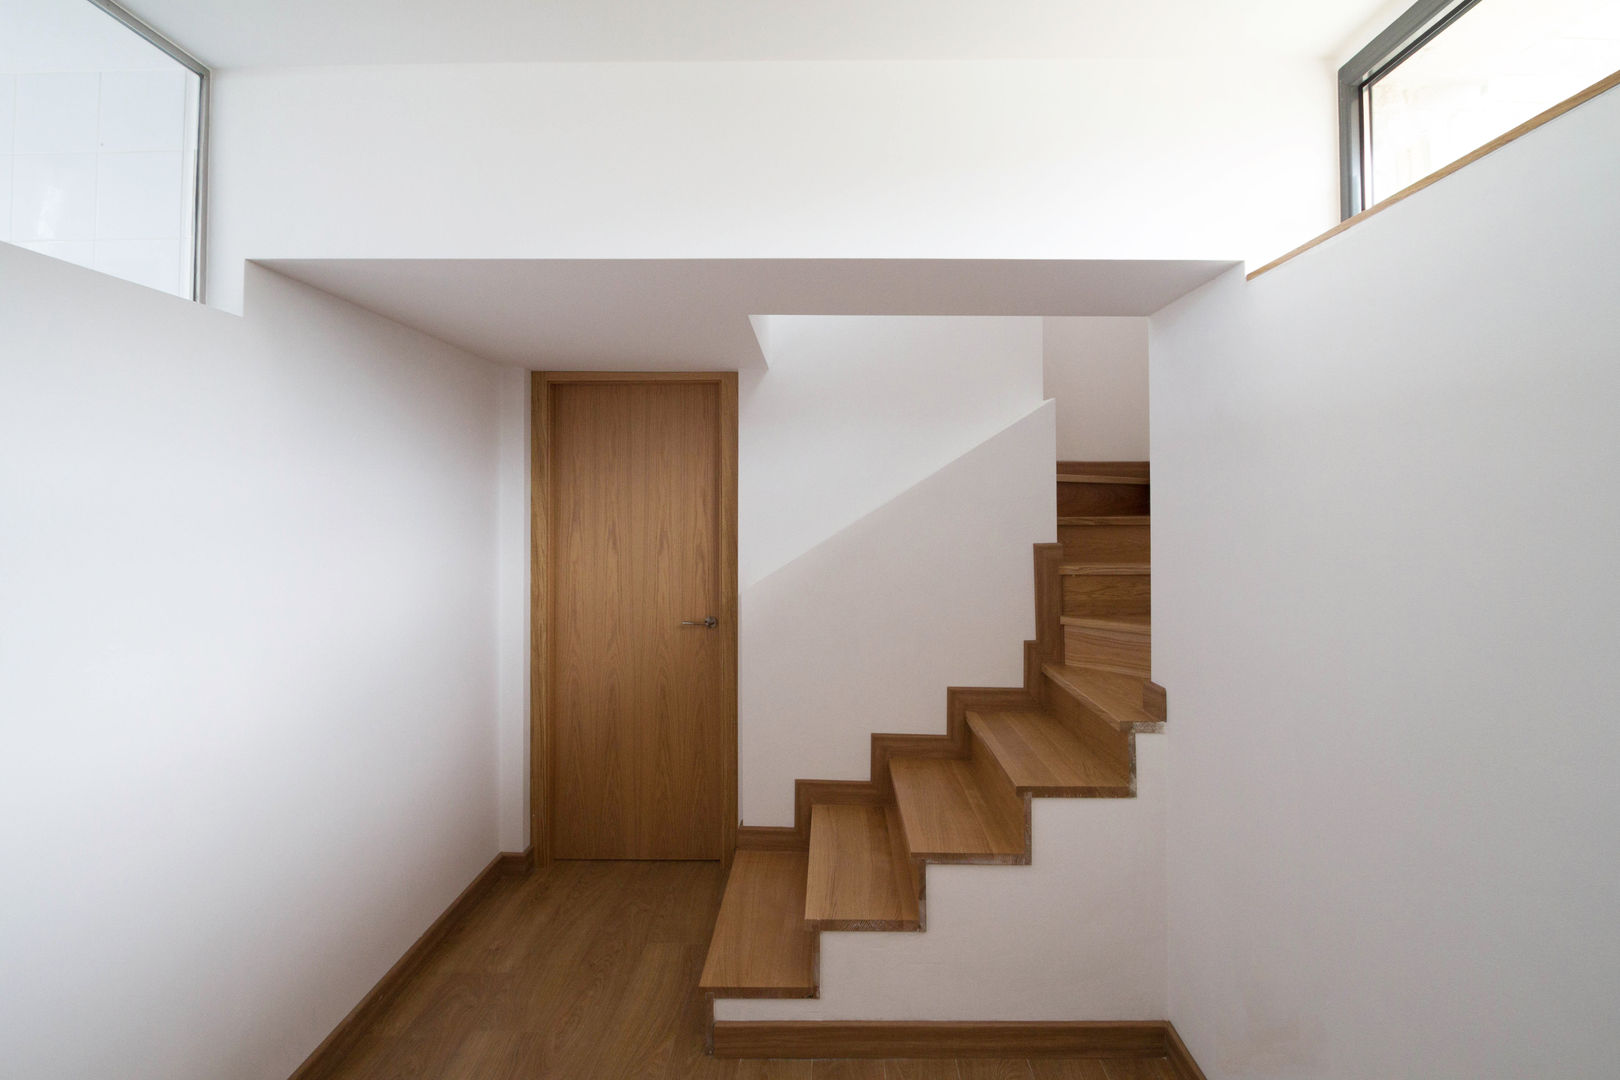 CASA BARBARA, R. Borja Alvarez. Arquitecto R. Borja Alvarez. Arquitecto Rustic style corridor, hallway & stairs